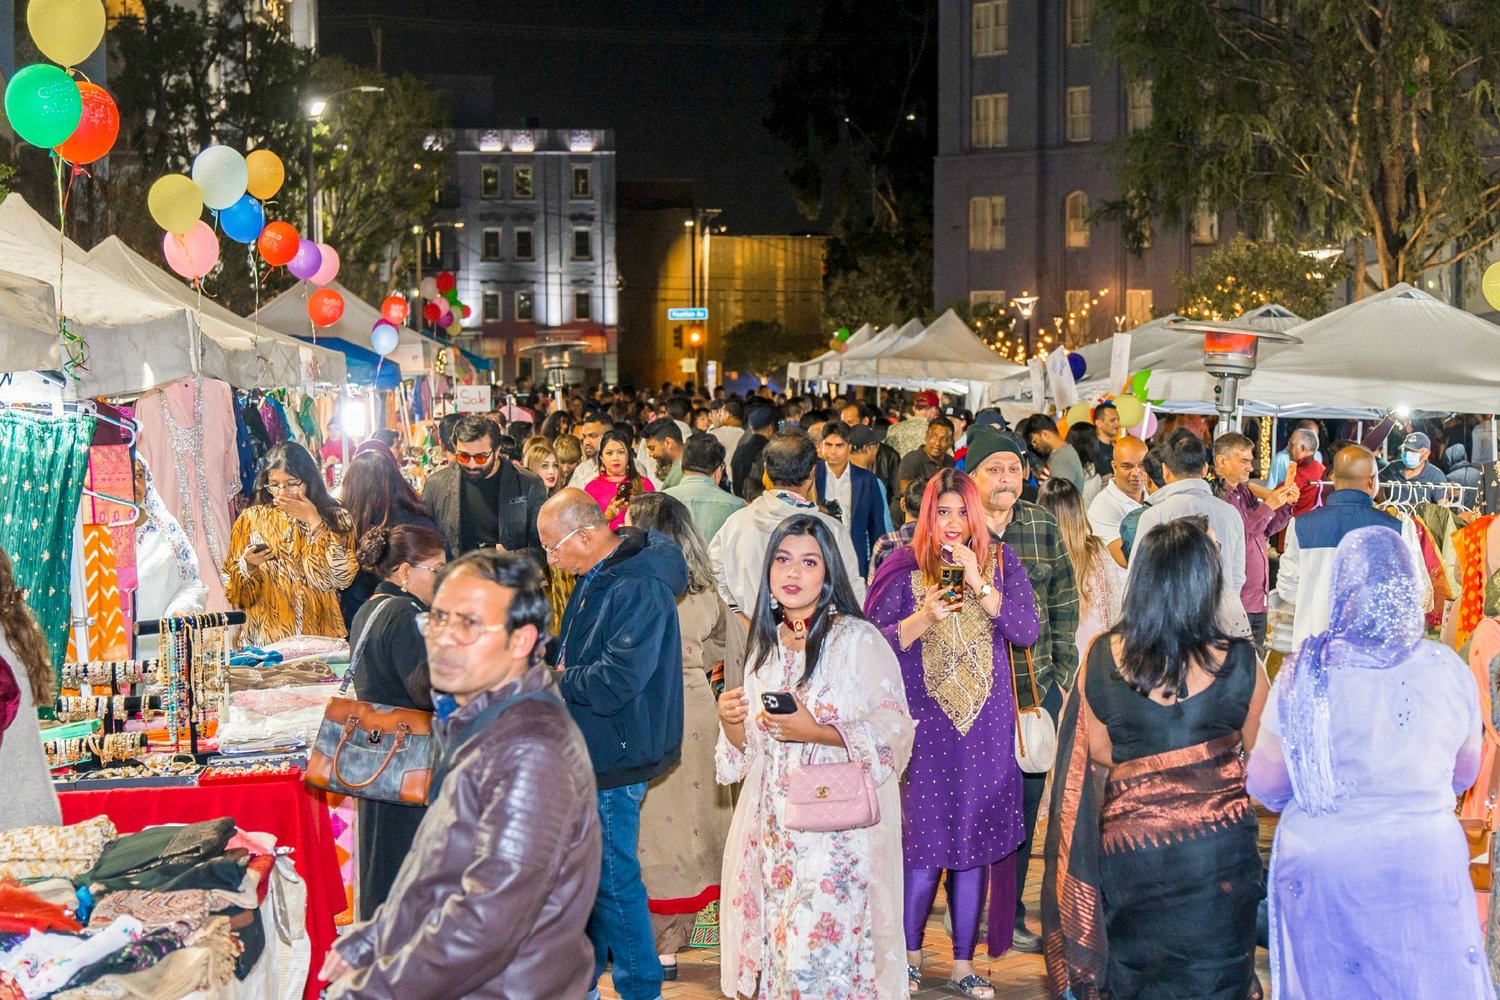 Festivalu pořádaného pro komunitu Los Angeles Bangladéš se zúčastnilo asi 1250 hostů